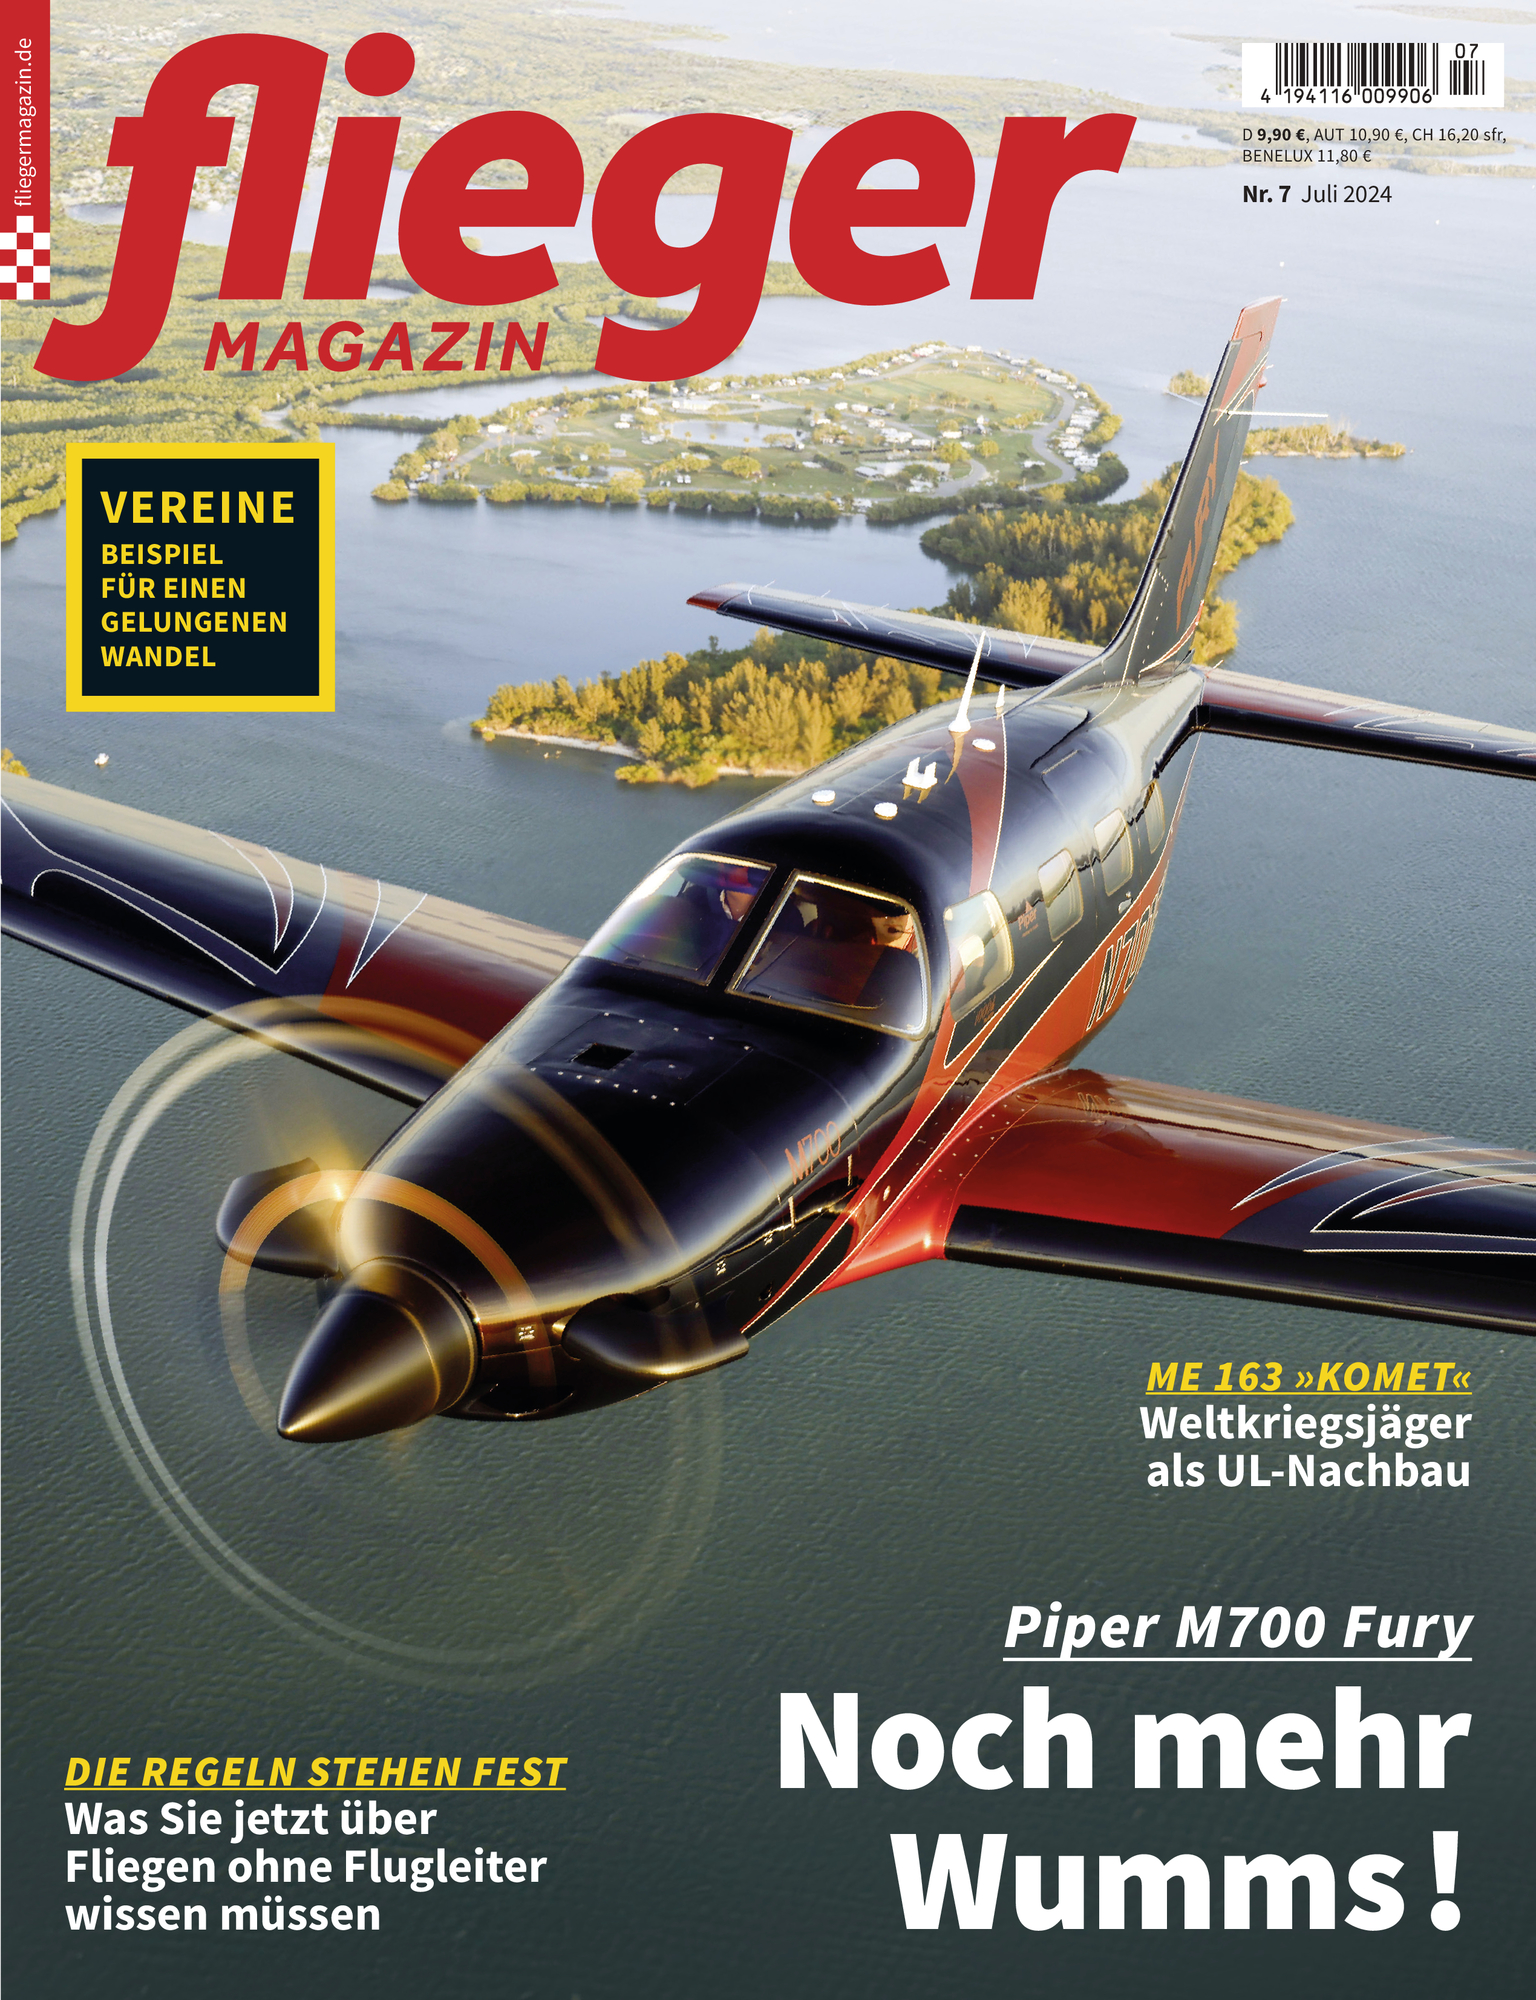 Jahresabo fliegermagazin für 194.40 CHF